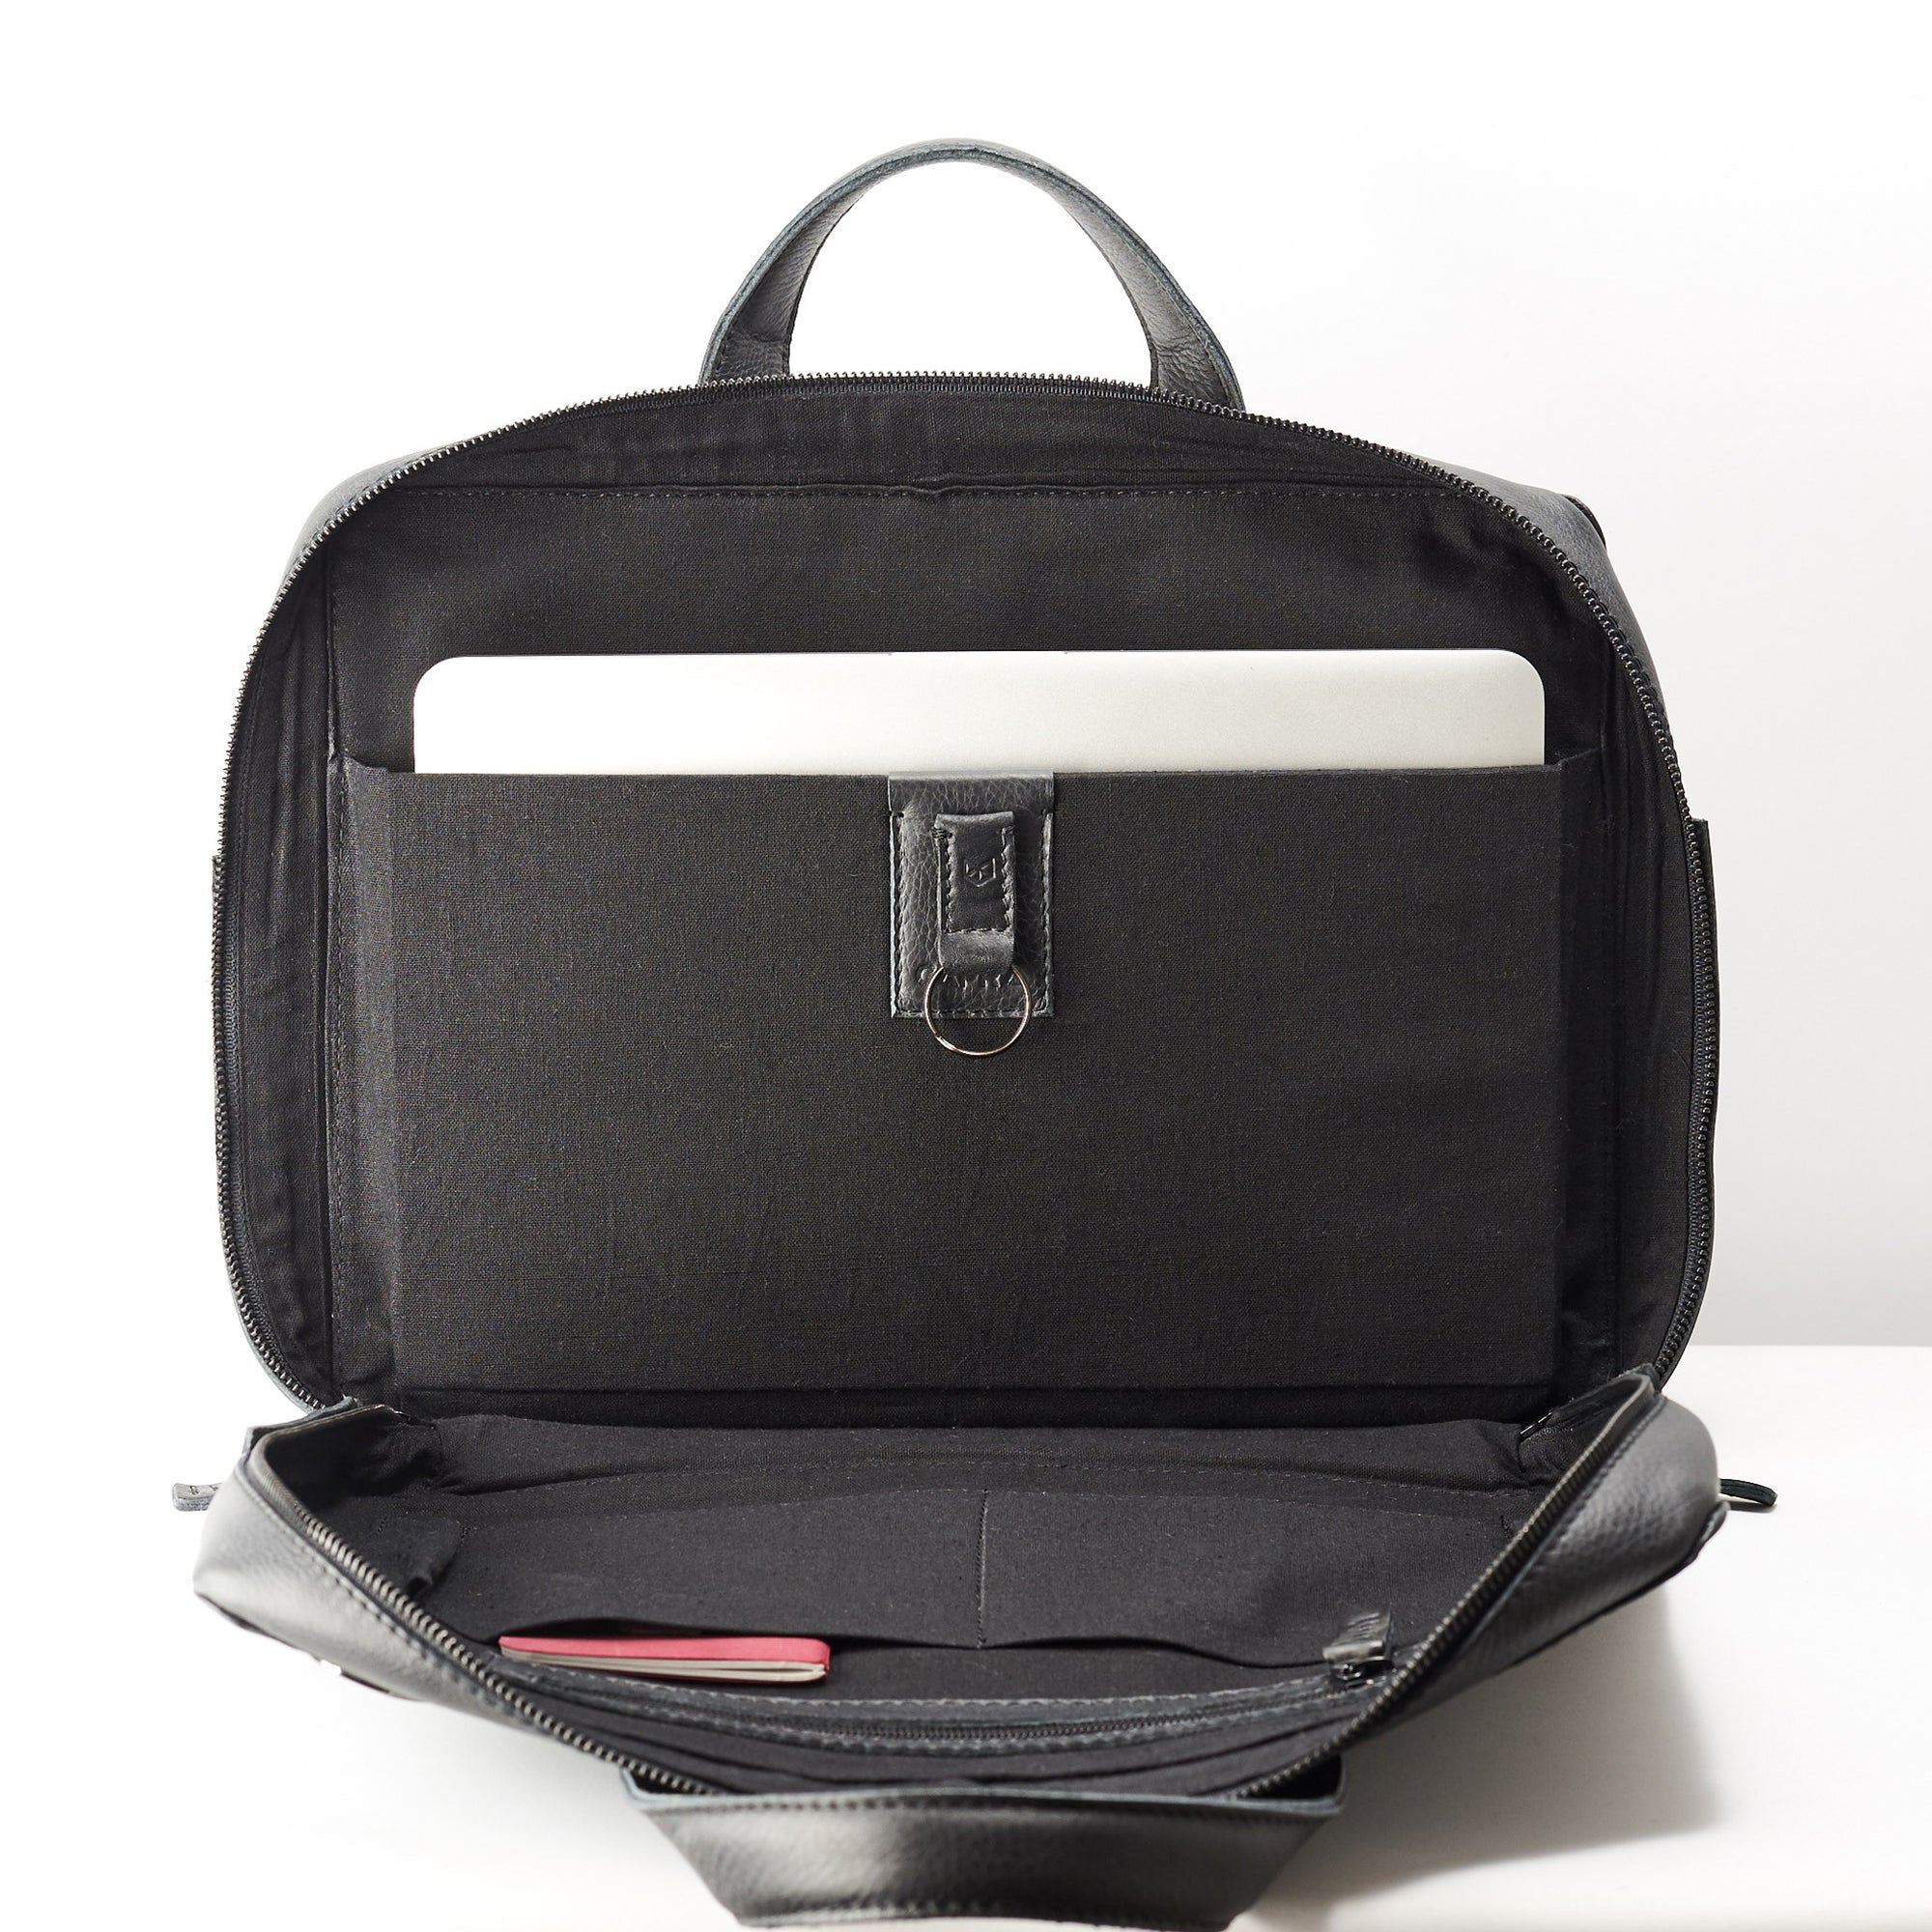 Laptop divider. Black linen interior. Soft leather briefcase for men